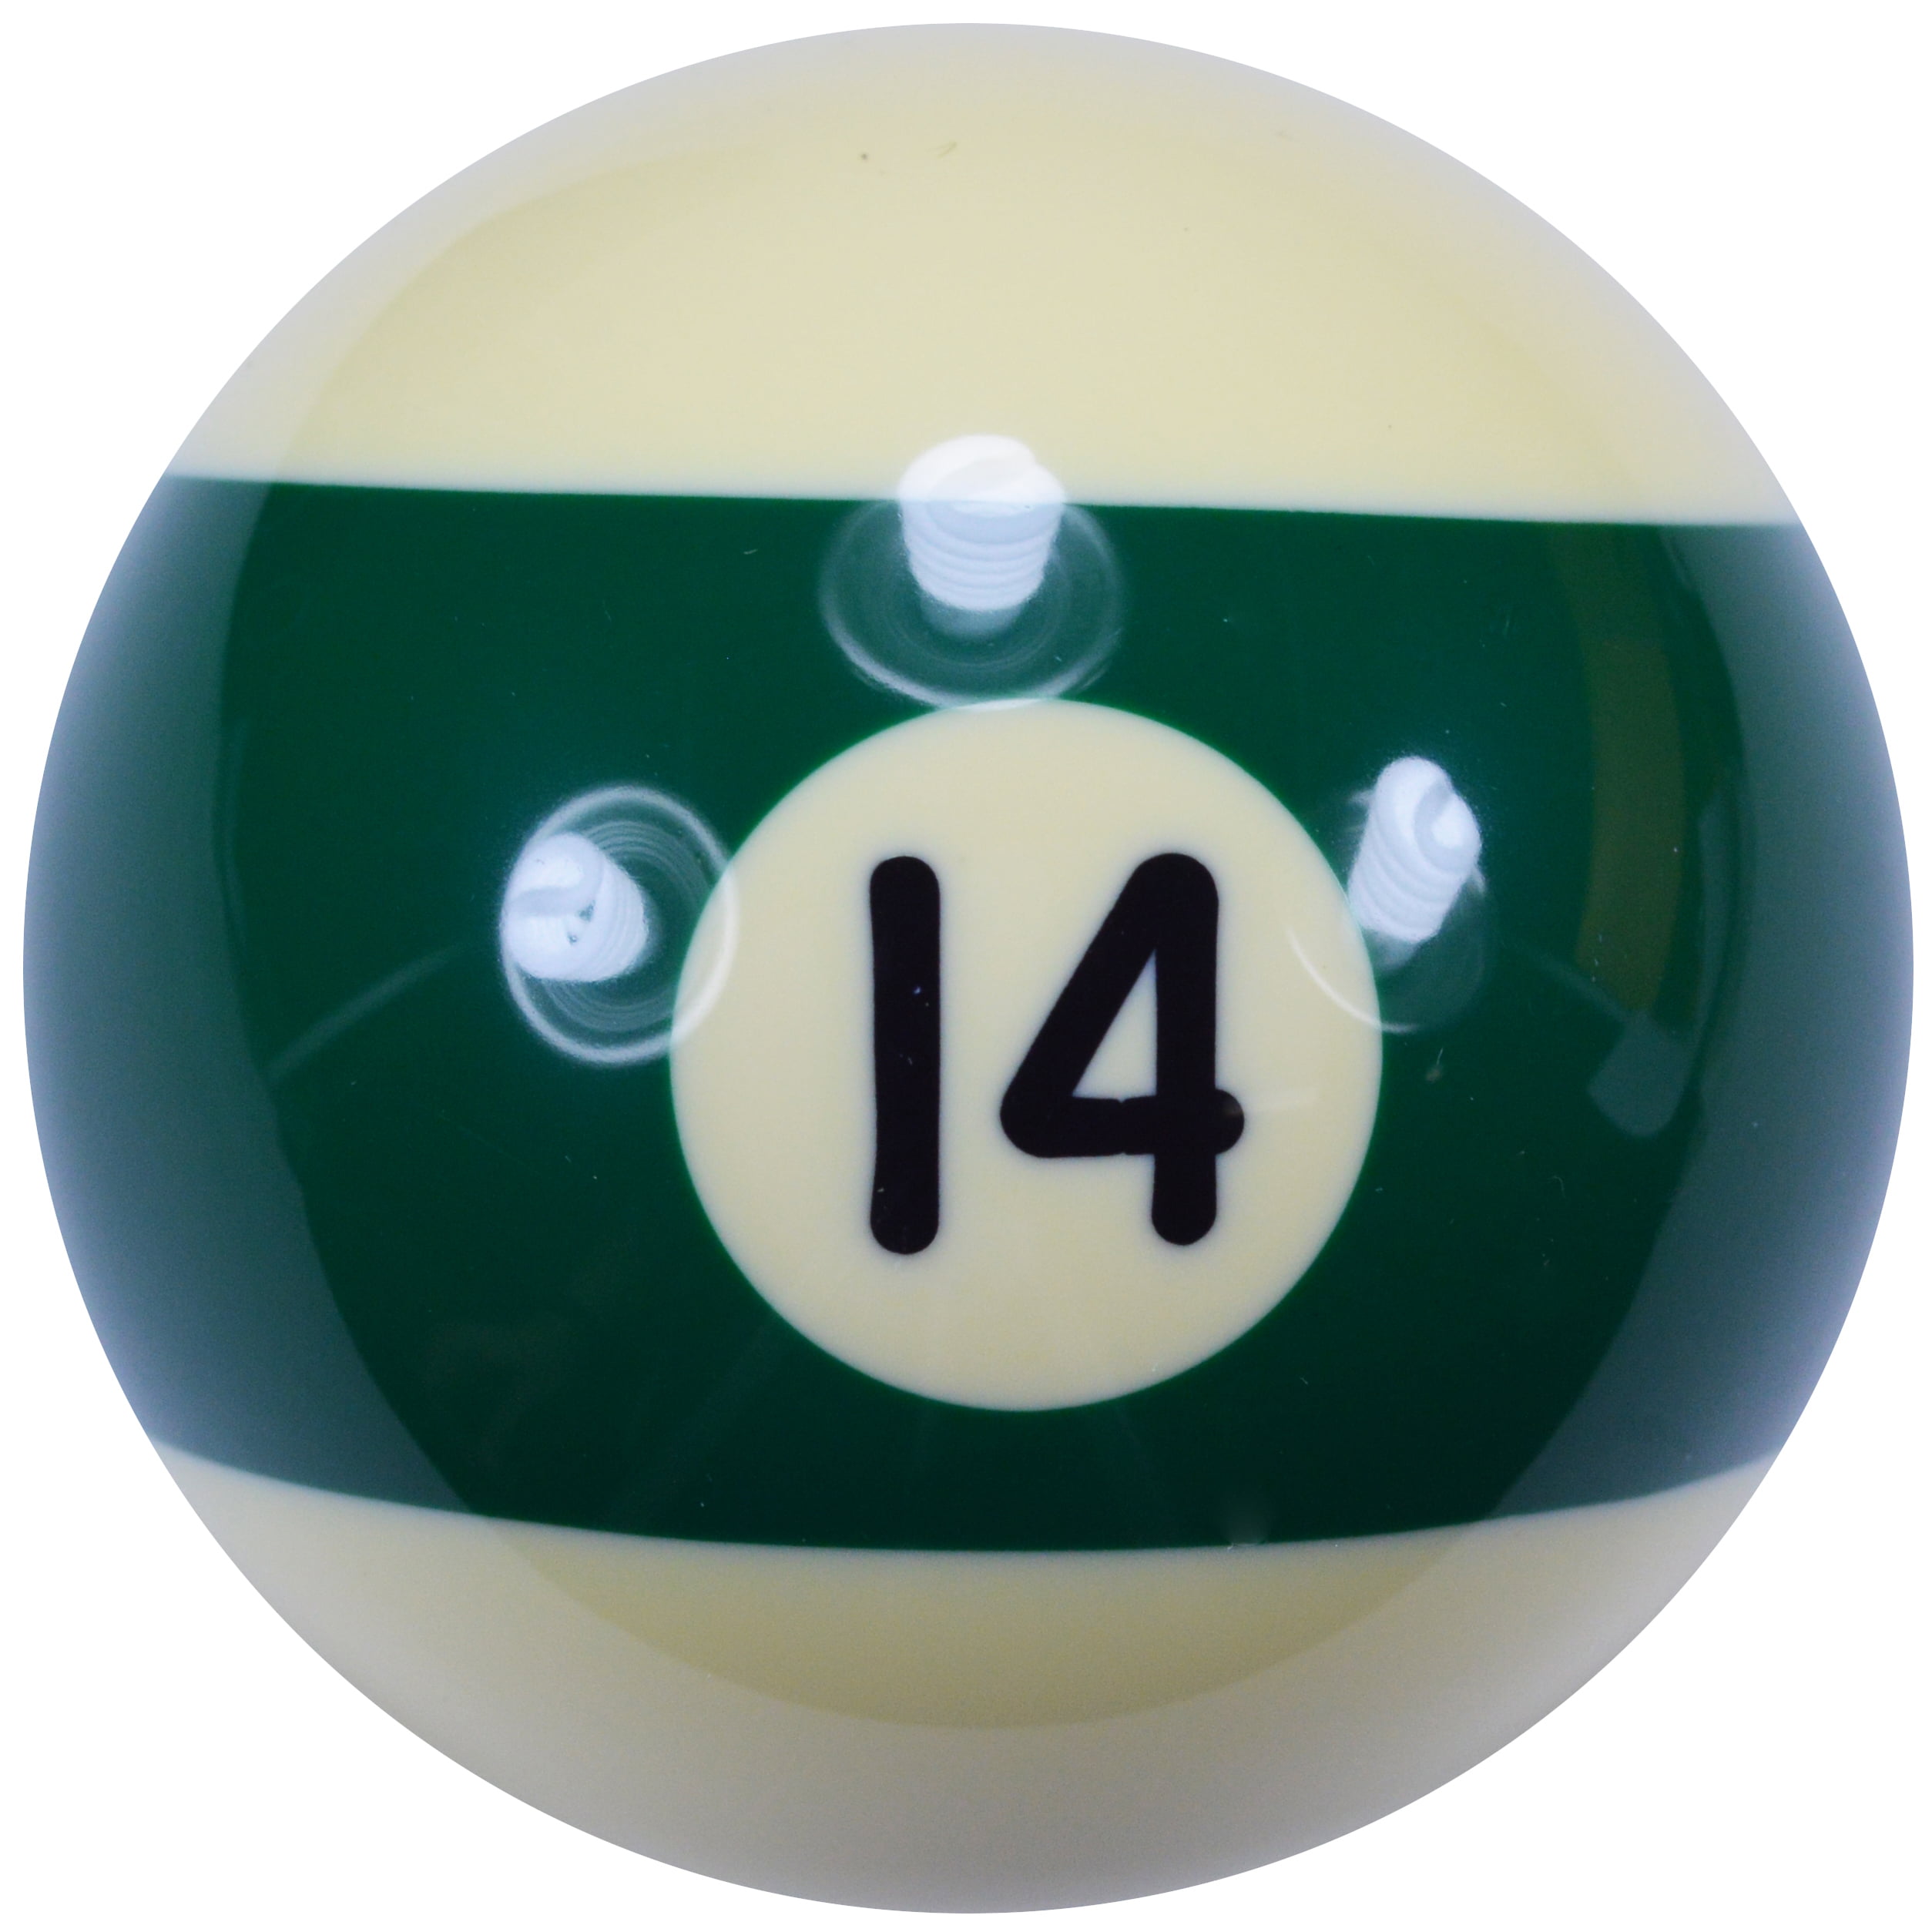 Ideal Sports Accessories 57mm Diameter 6 Blue Spot Dots Billiard Practice Training Cue Pool Ball 